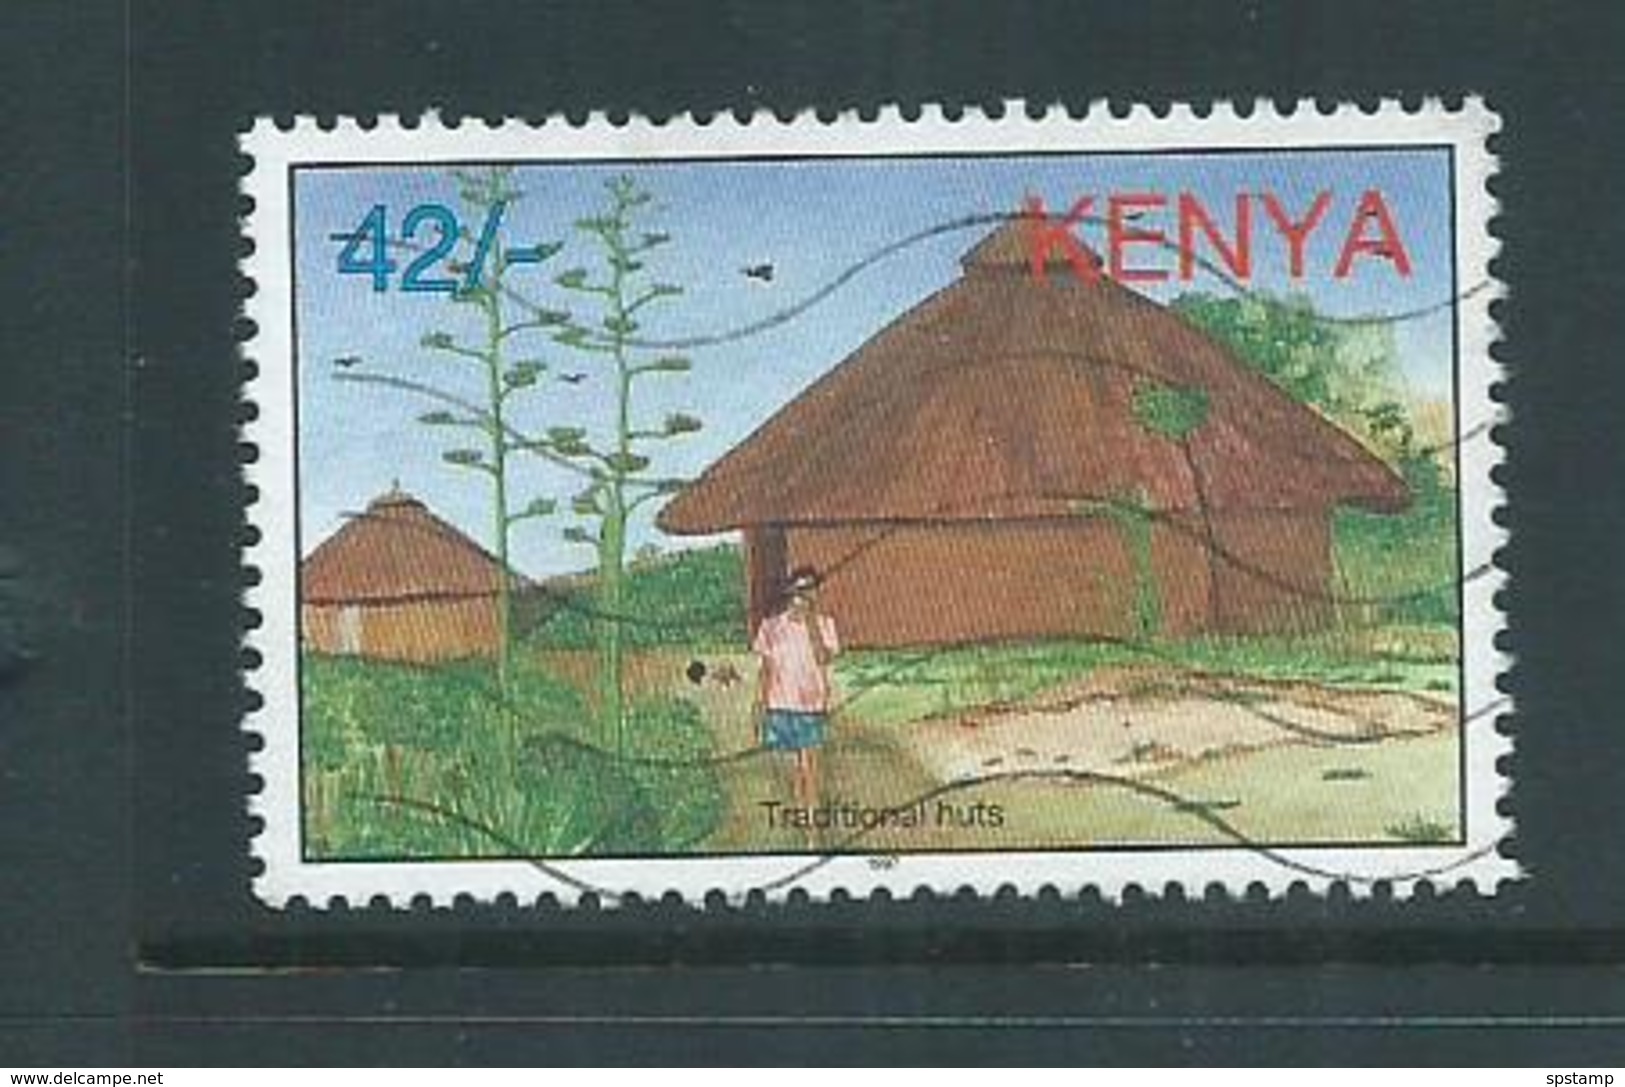 Kenya 1997 42/- Tourism FU - Kenya (1963-...)